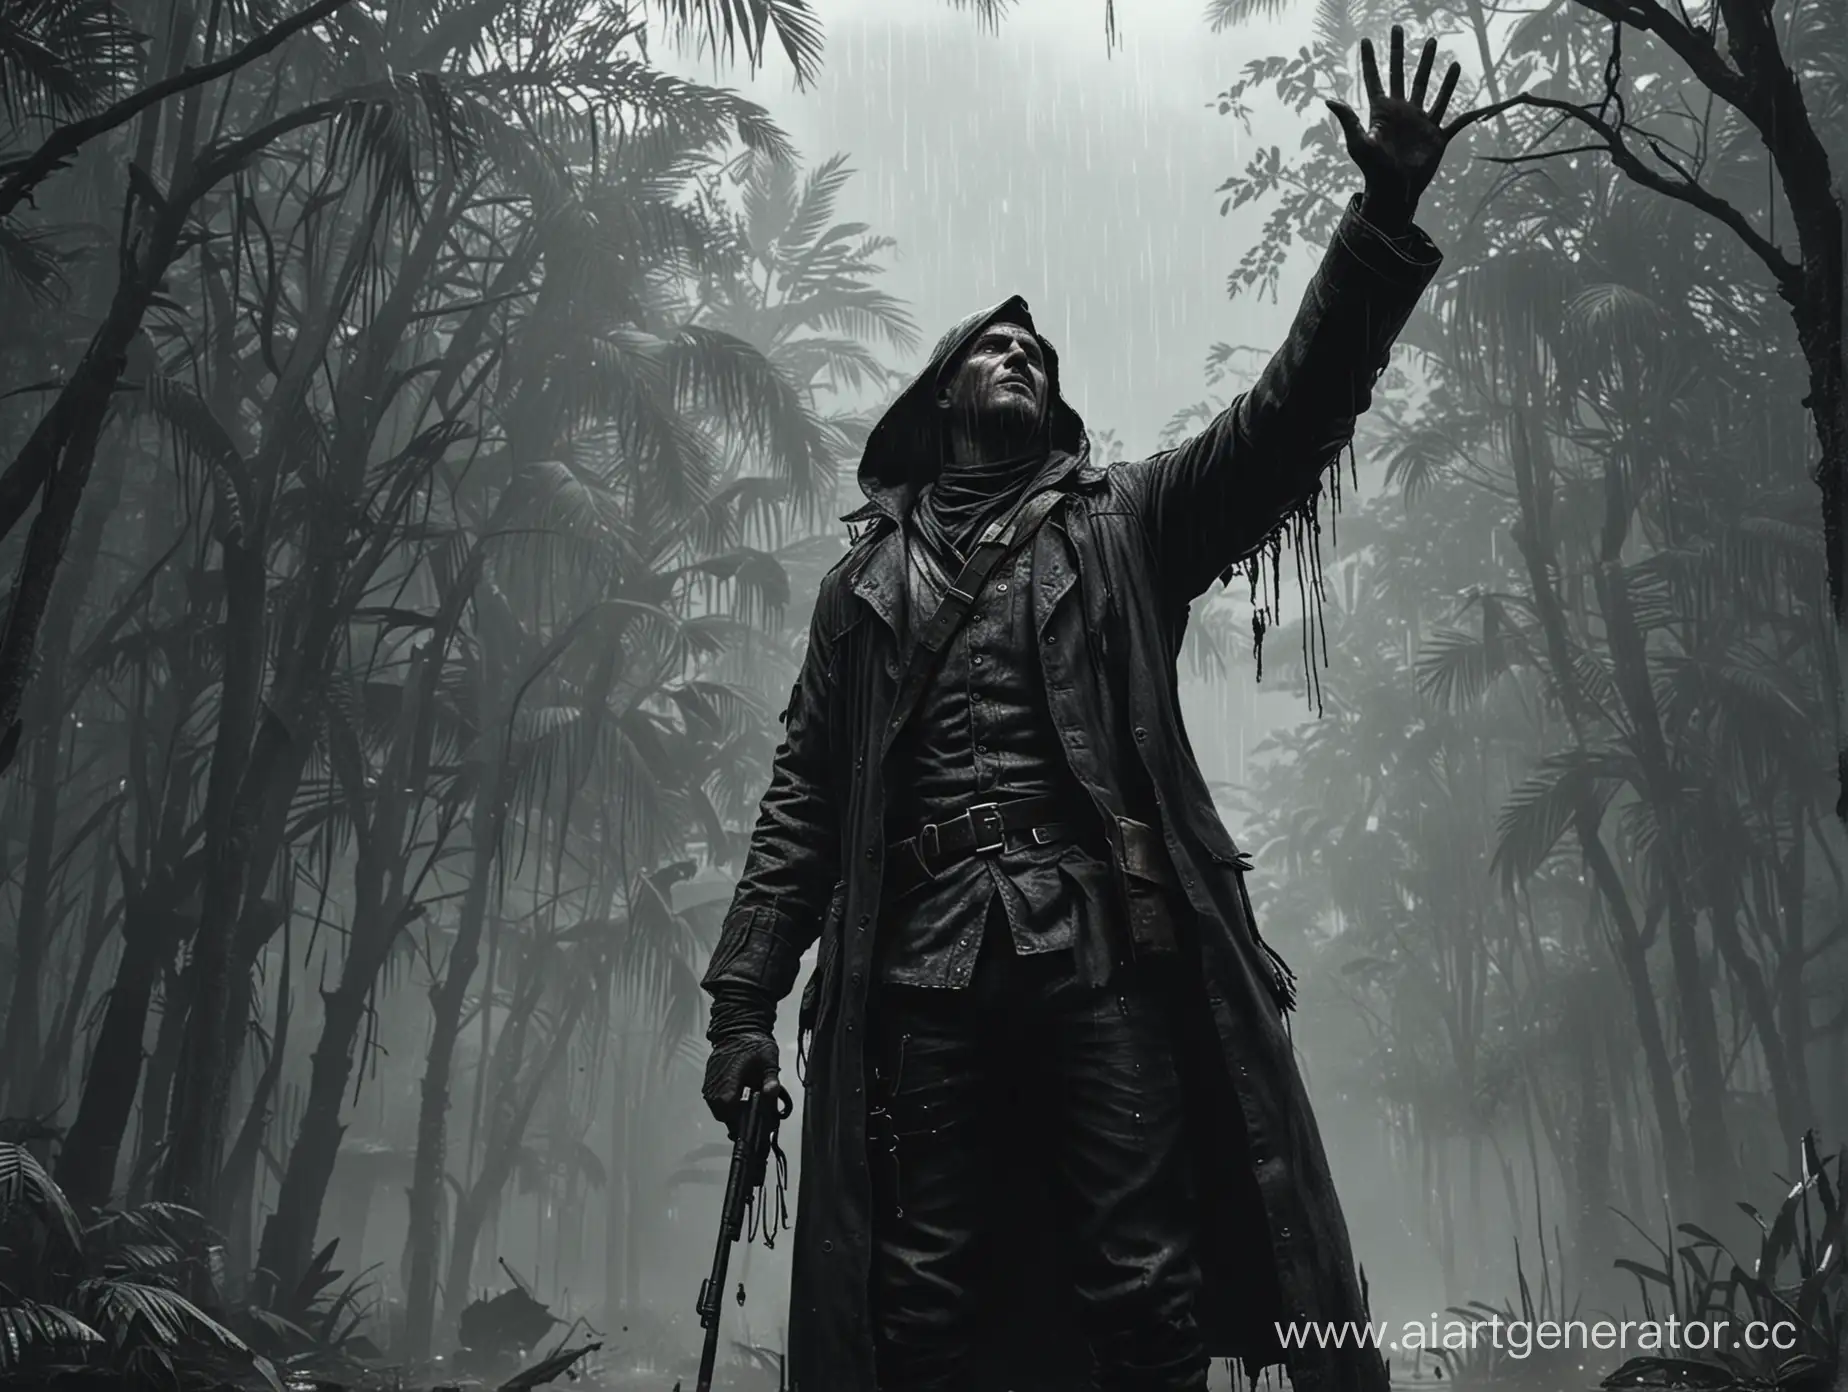 Персонаж hunt showdown в капюшоне стоит боком, поднимает левую руку к небу ладонью вверх и вокруг идет дождь. Персонаж будто скорбит